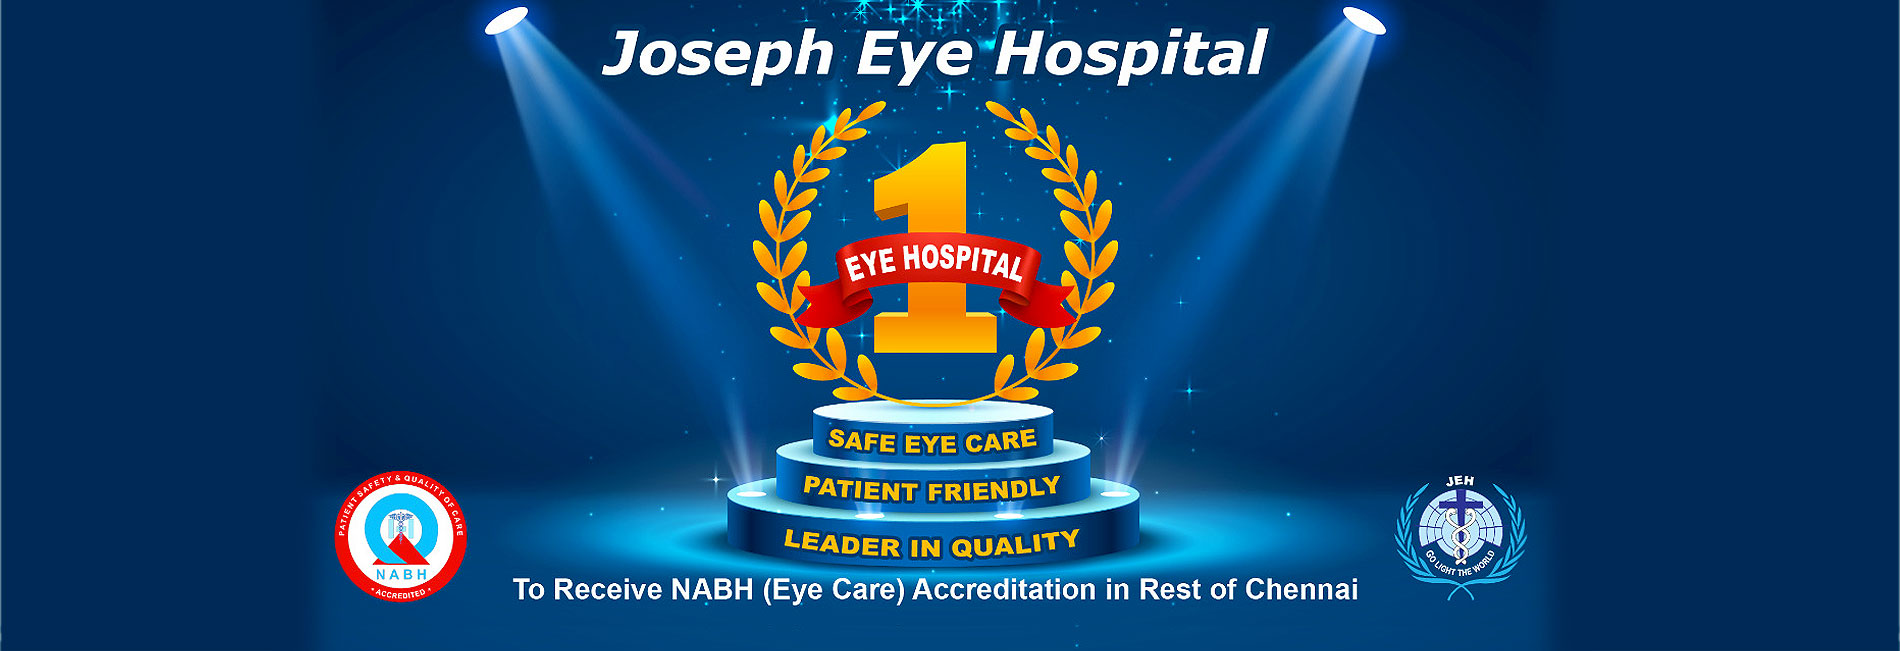 Joseph Eye Hospital Slider5